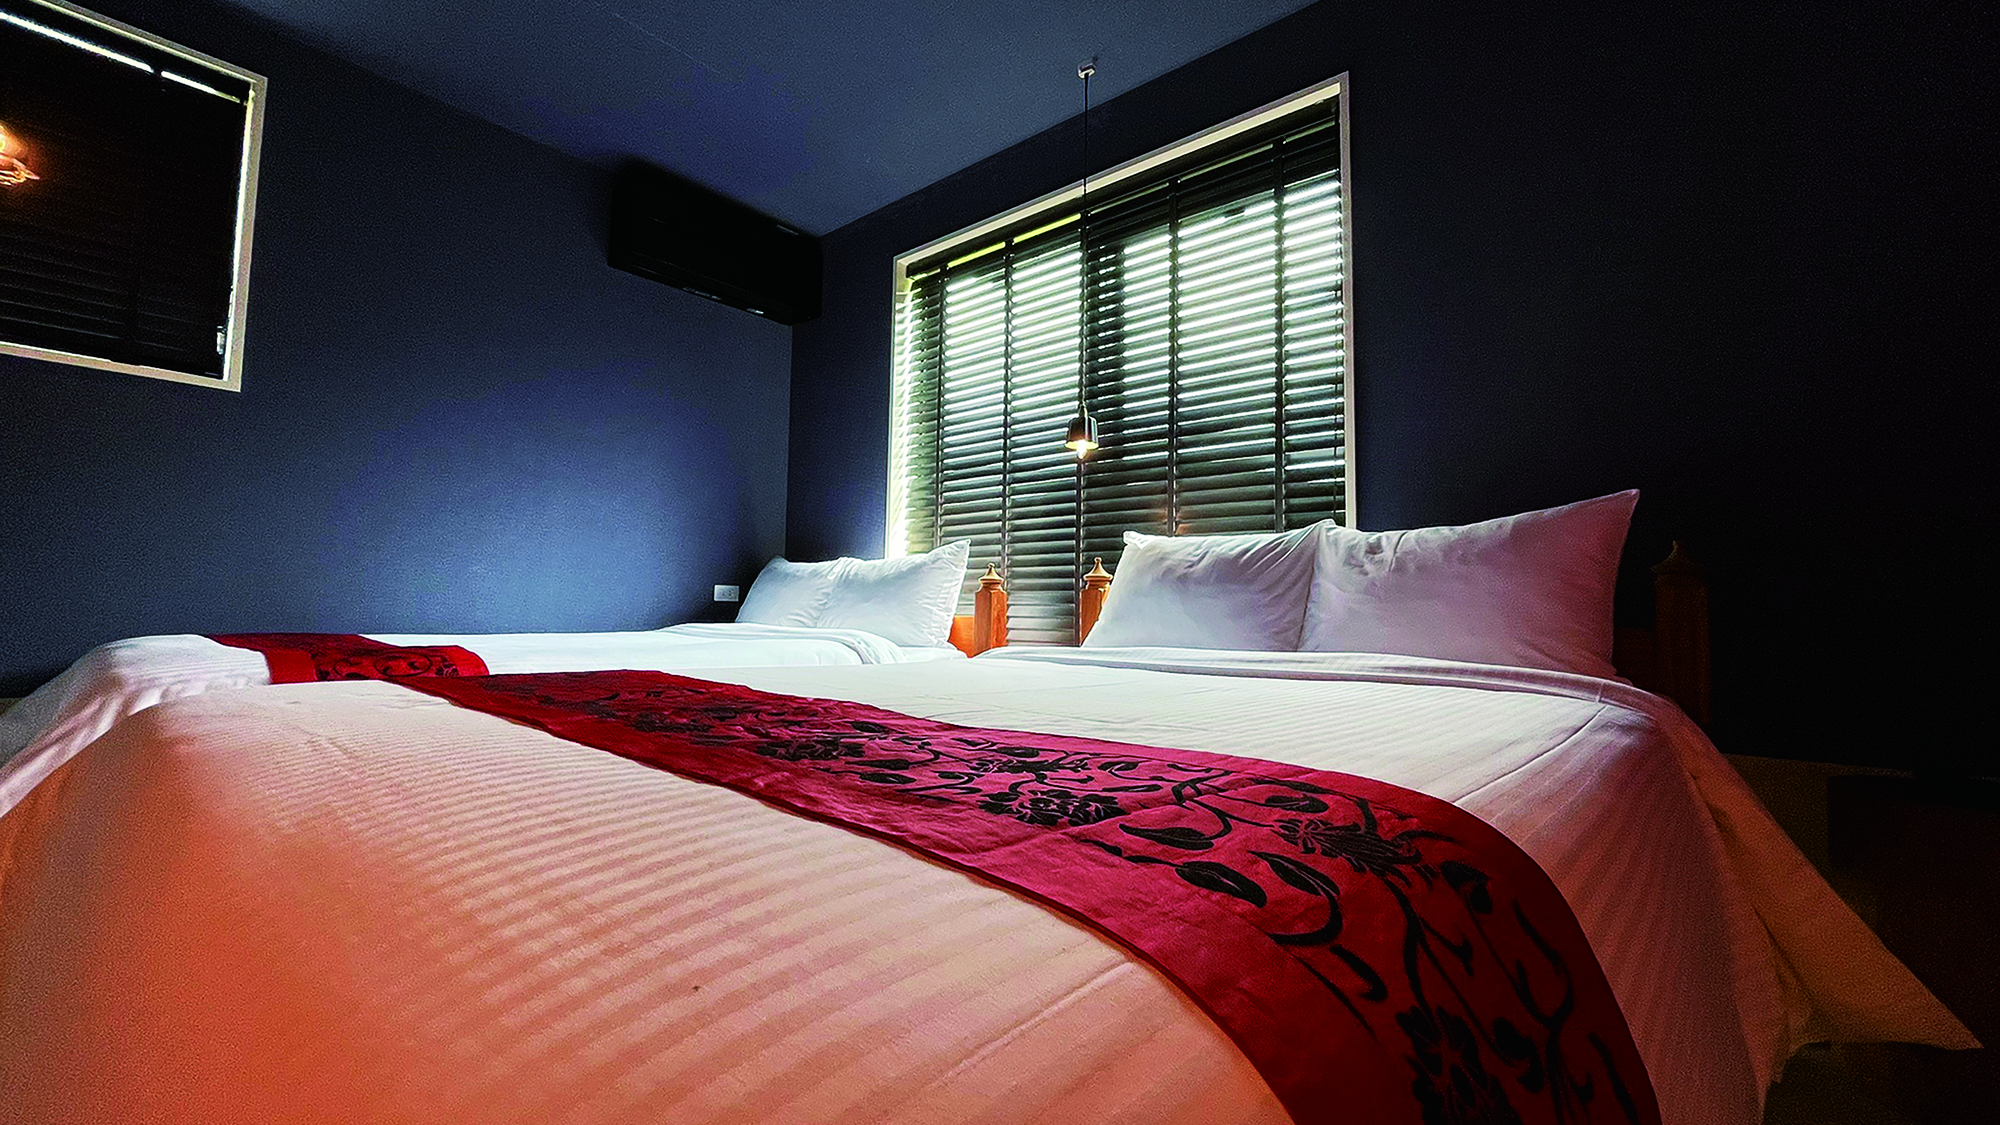 【3F】スーペリアデザインスカイビュー　モダンな雰囲気のベッドルーム